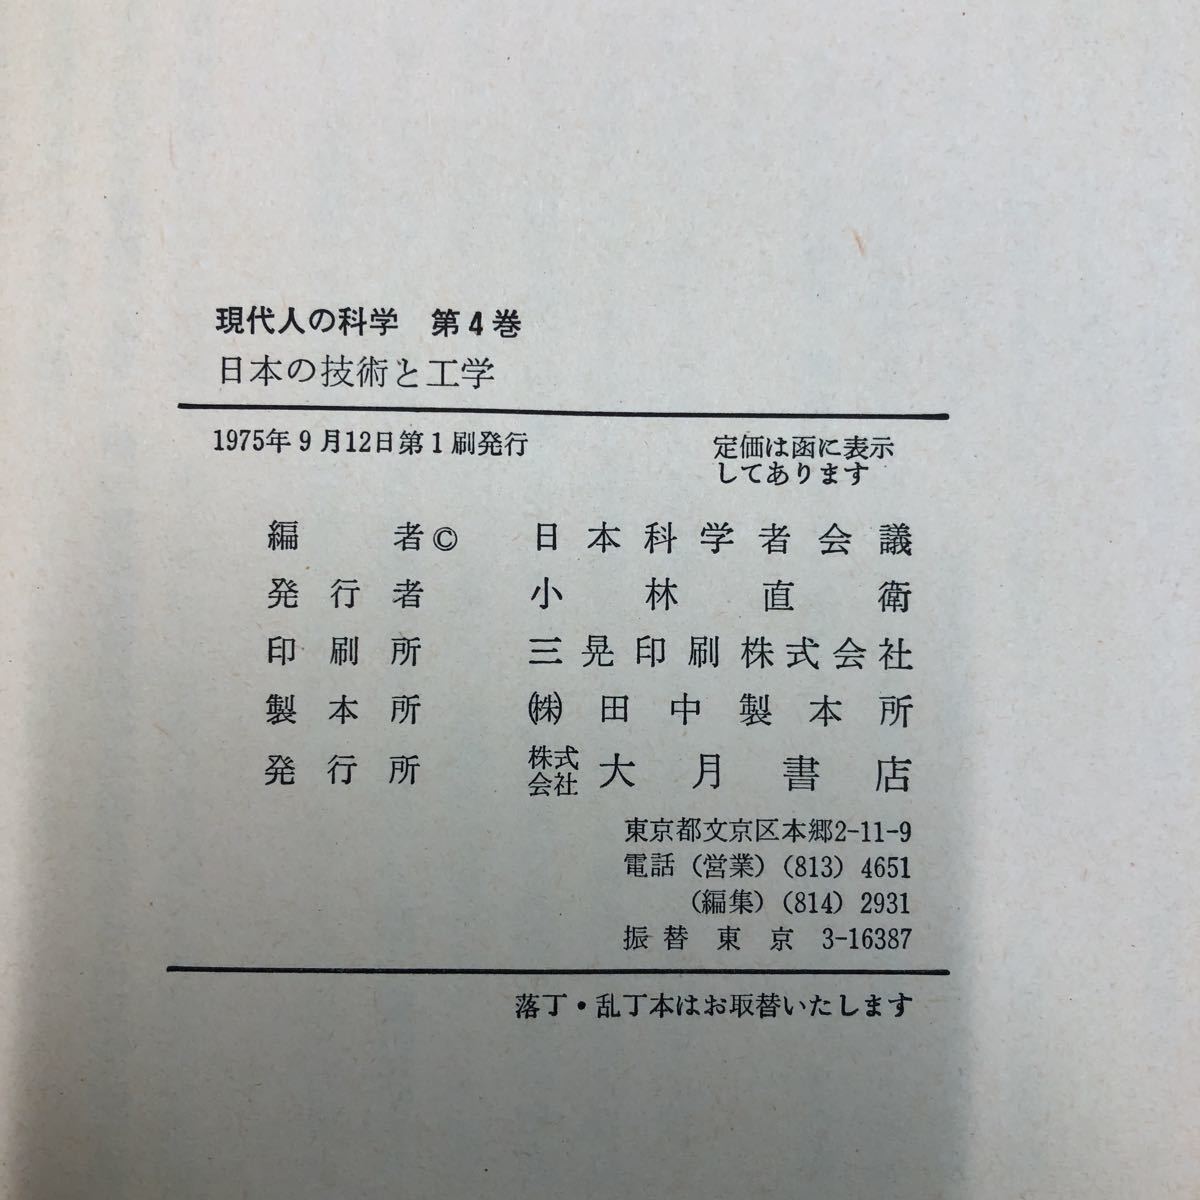 S6h-091 日本の技術と工学 現代人の科学 第4巻 講座 編者 日本科学者会議 1975年9月12日 第1刷発行 大月書店 工学 技術 論文 社会科学 体系_画像5